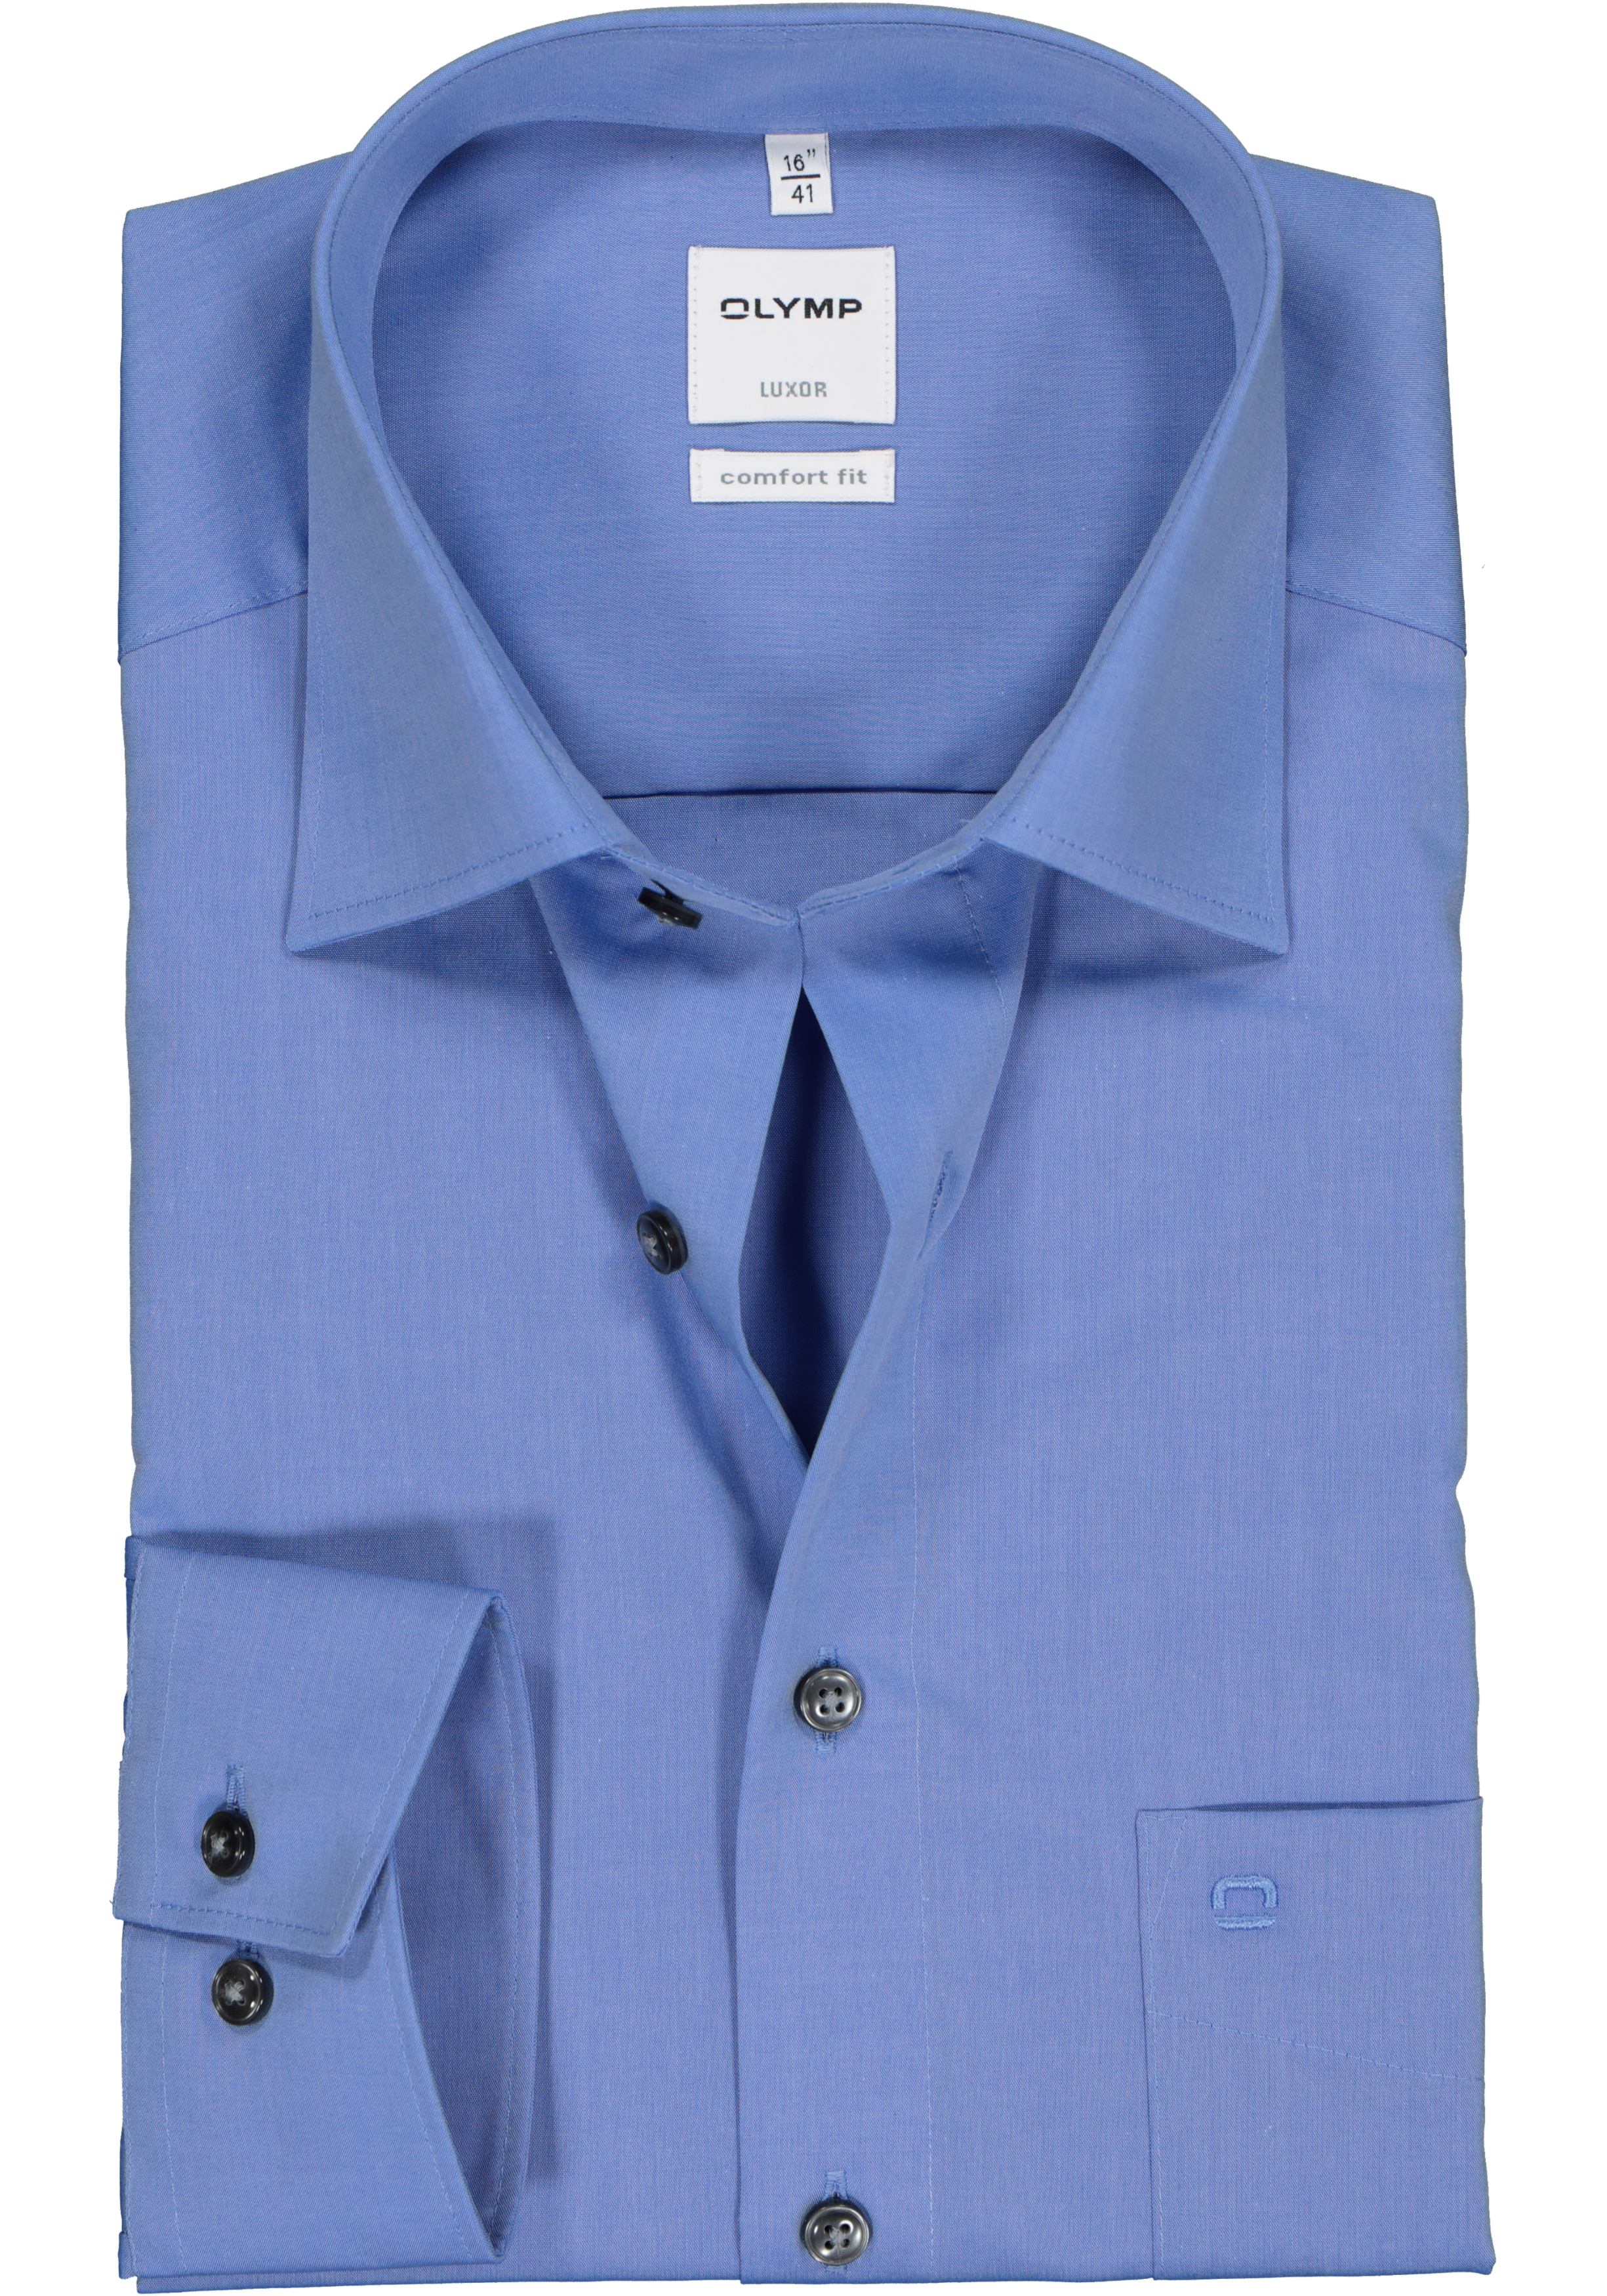 De andere dag toezicht houden op Tegenhanger OLYMP Comfort Fit overhemd, blauw - Gratis bezorgd